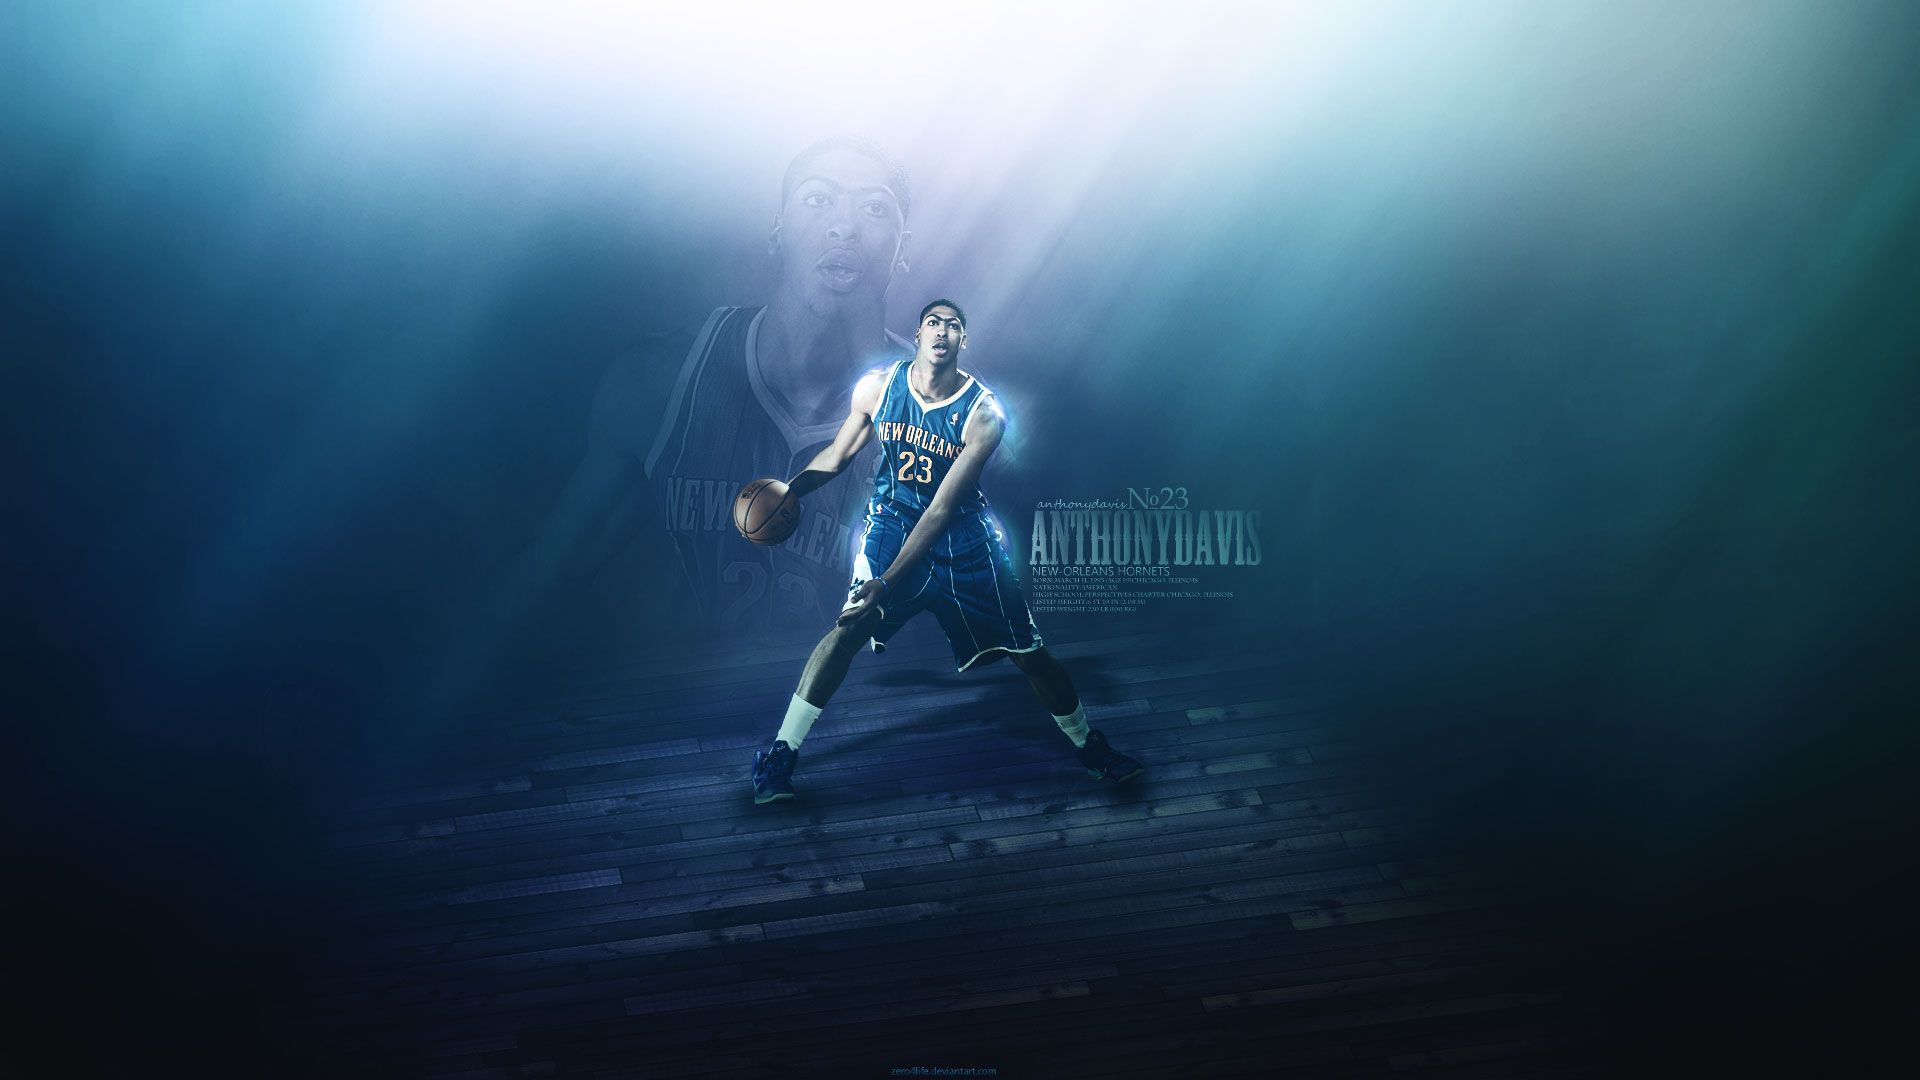 Anthony Davis Hornets 2012 1920×1080 Wallpaper | Basketball ...